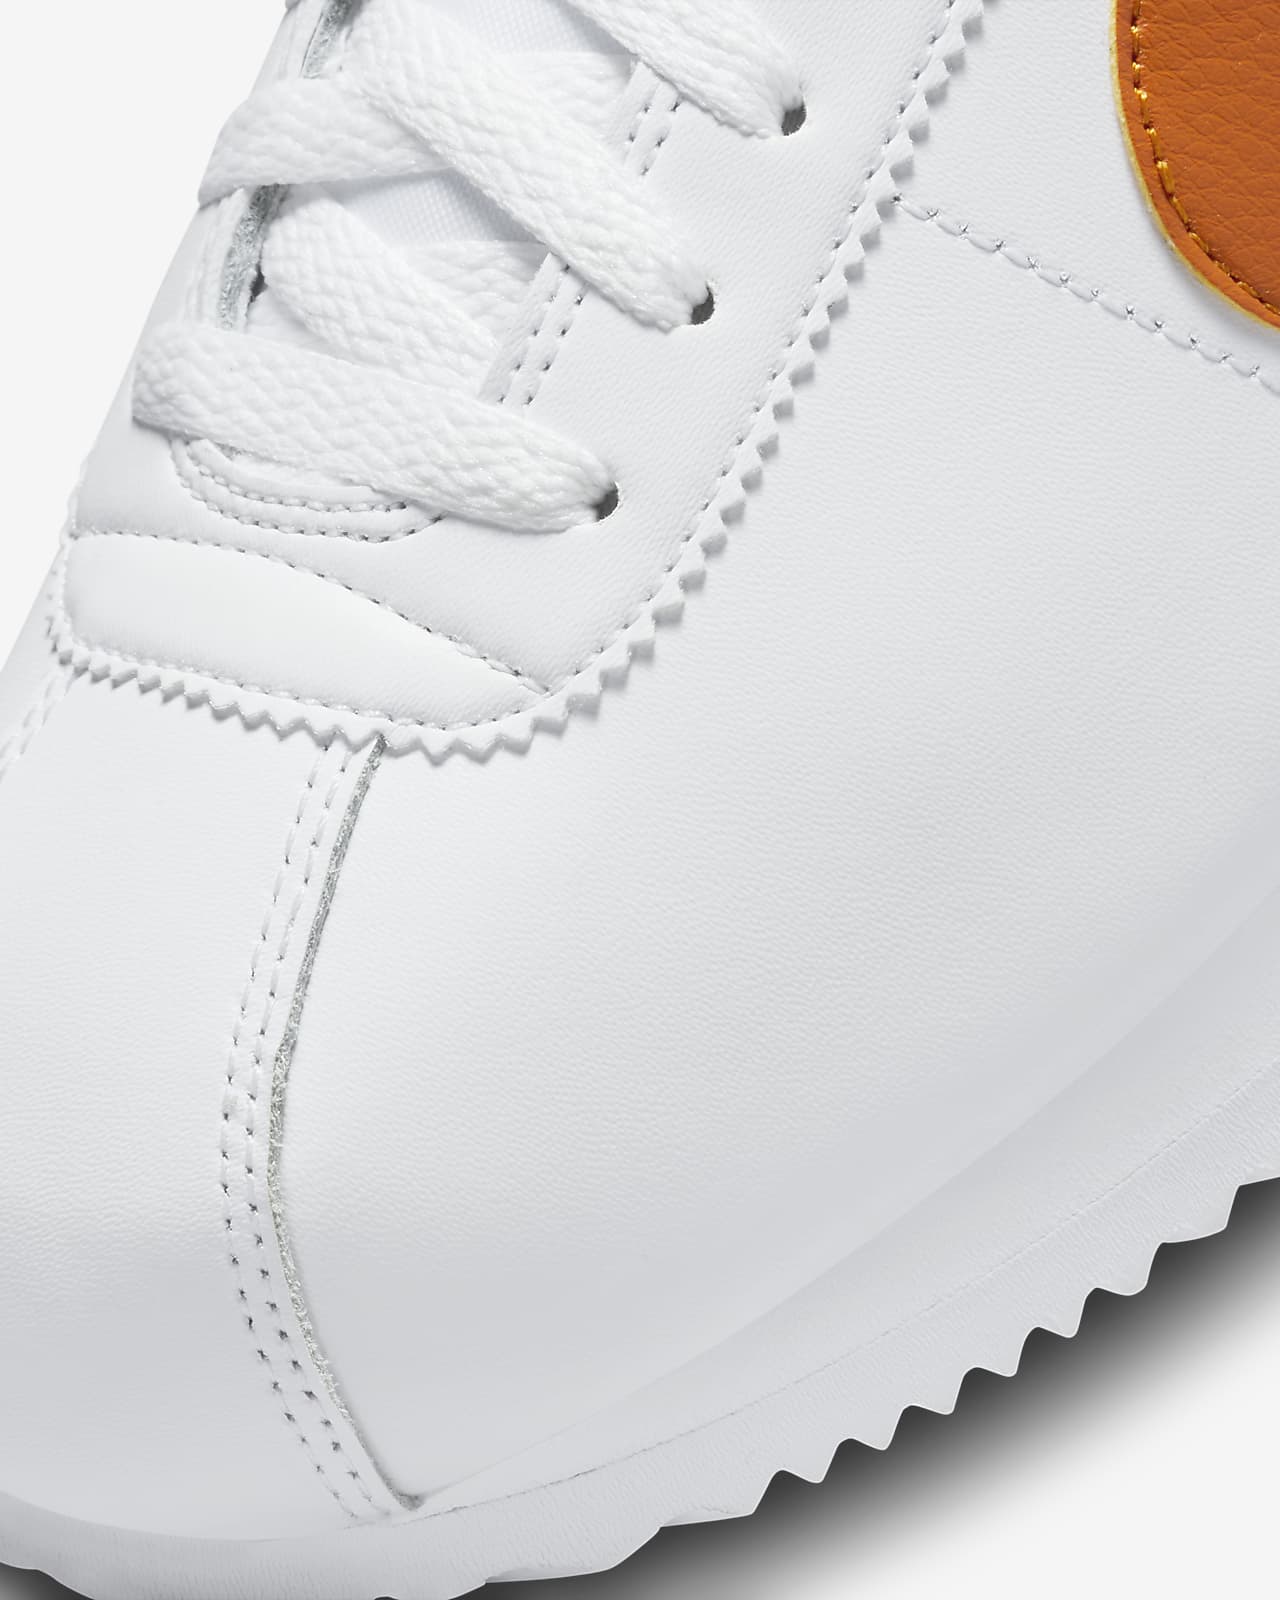 Nike Classic Cortez By You Custom Men's Shoe